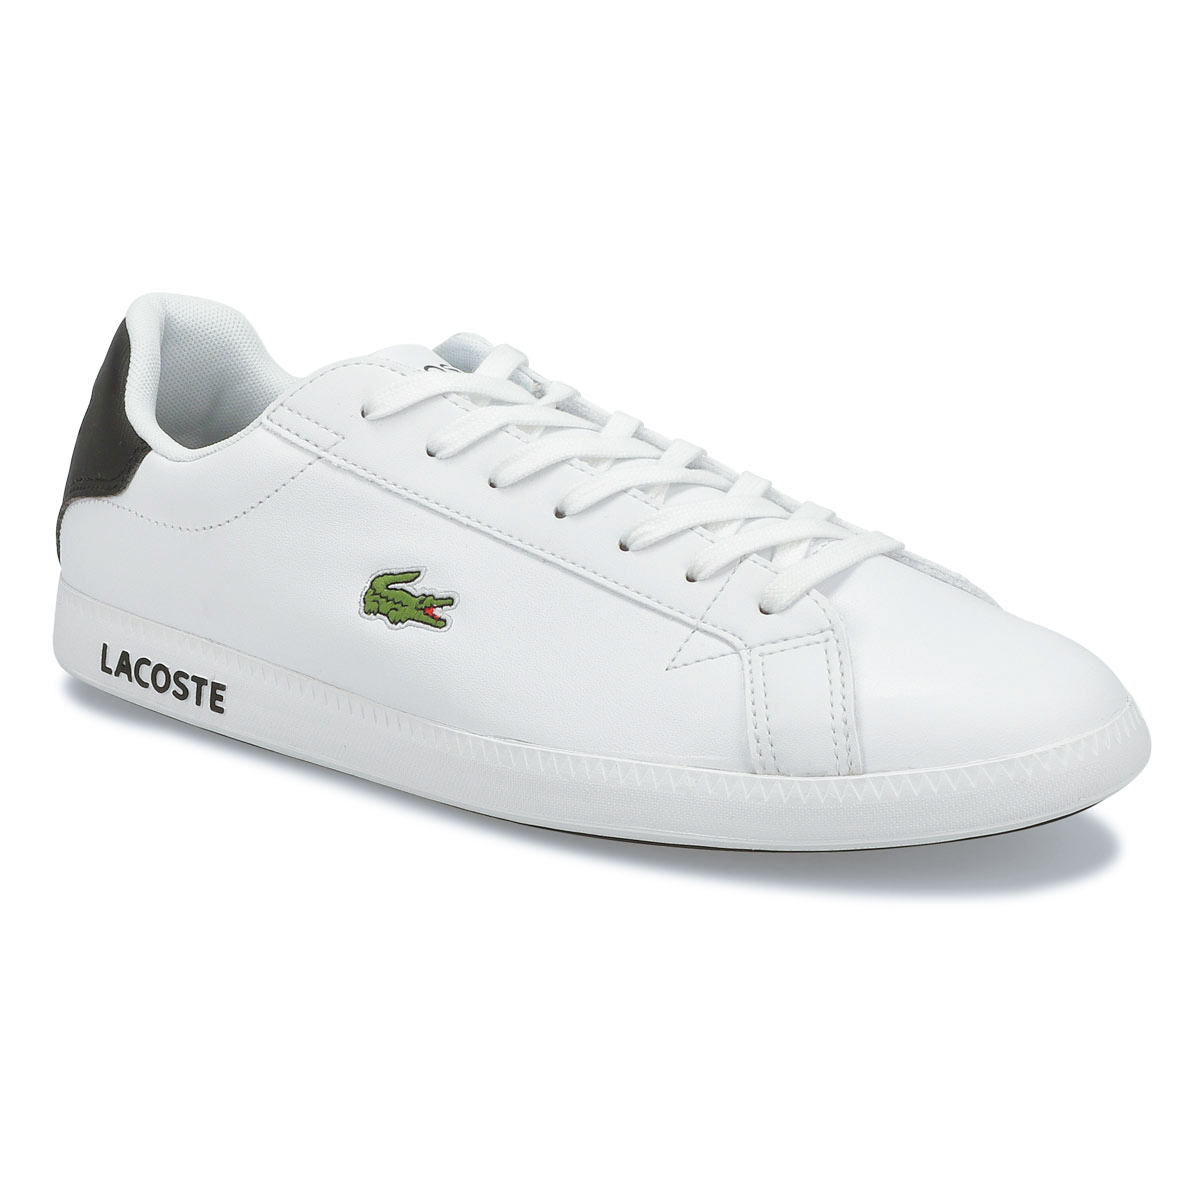 Lacoste Men's Graduate 120 1 Sneakers - White | SoftMoc.com